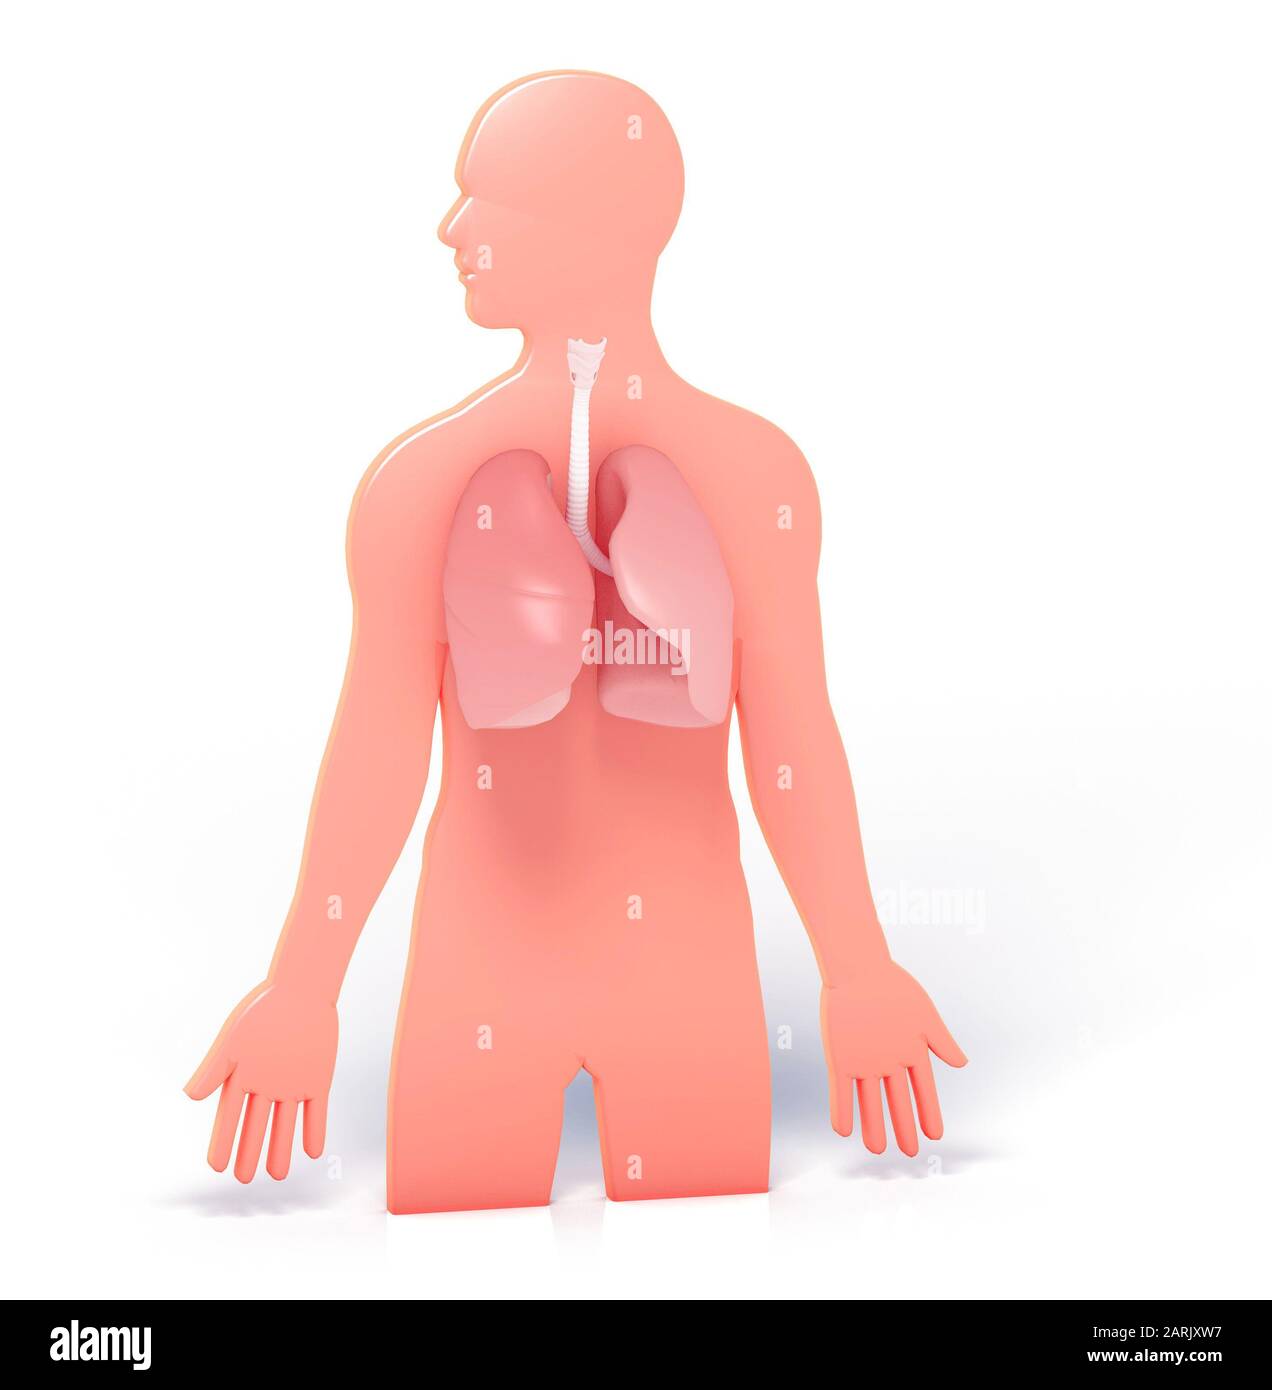 3d illustrazione della silhouette di un uomo, che mostra i polmoni e i bronchi che si distinguono. Rappresentazione grafica dell'anatomia interna. Foto Stock